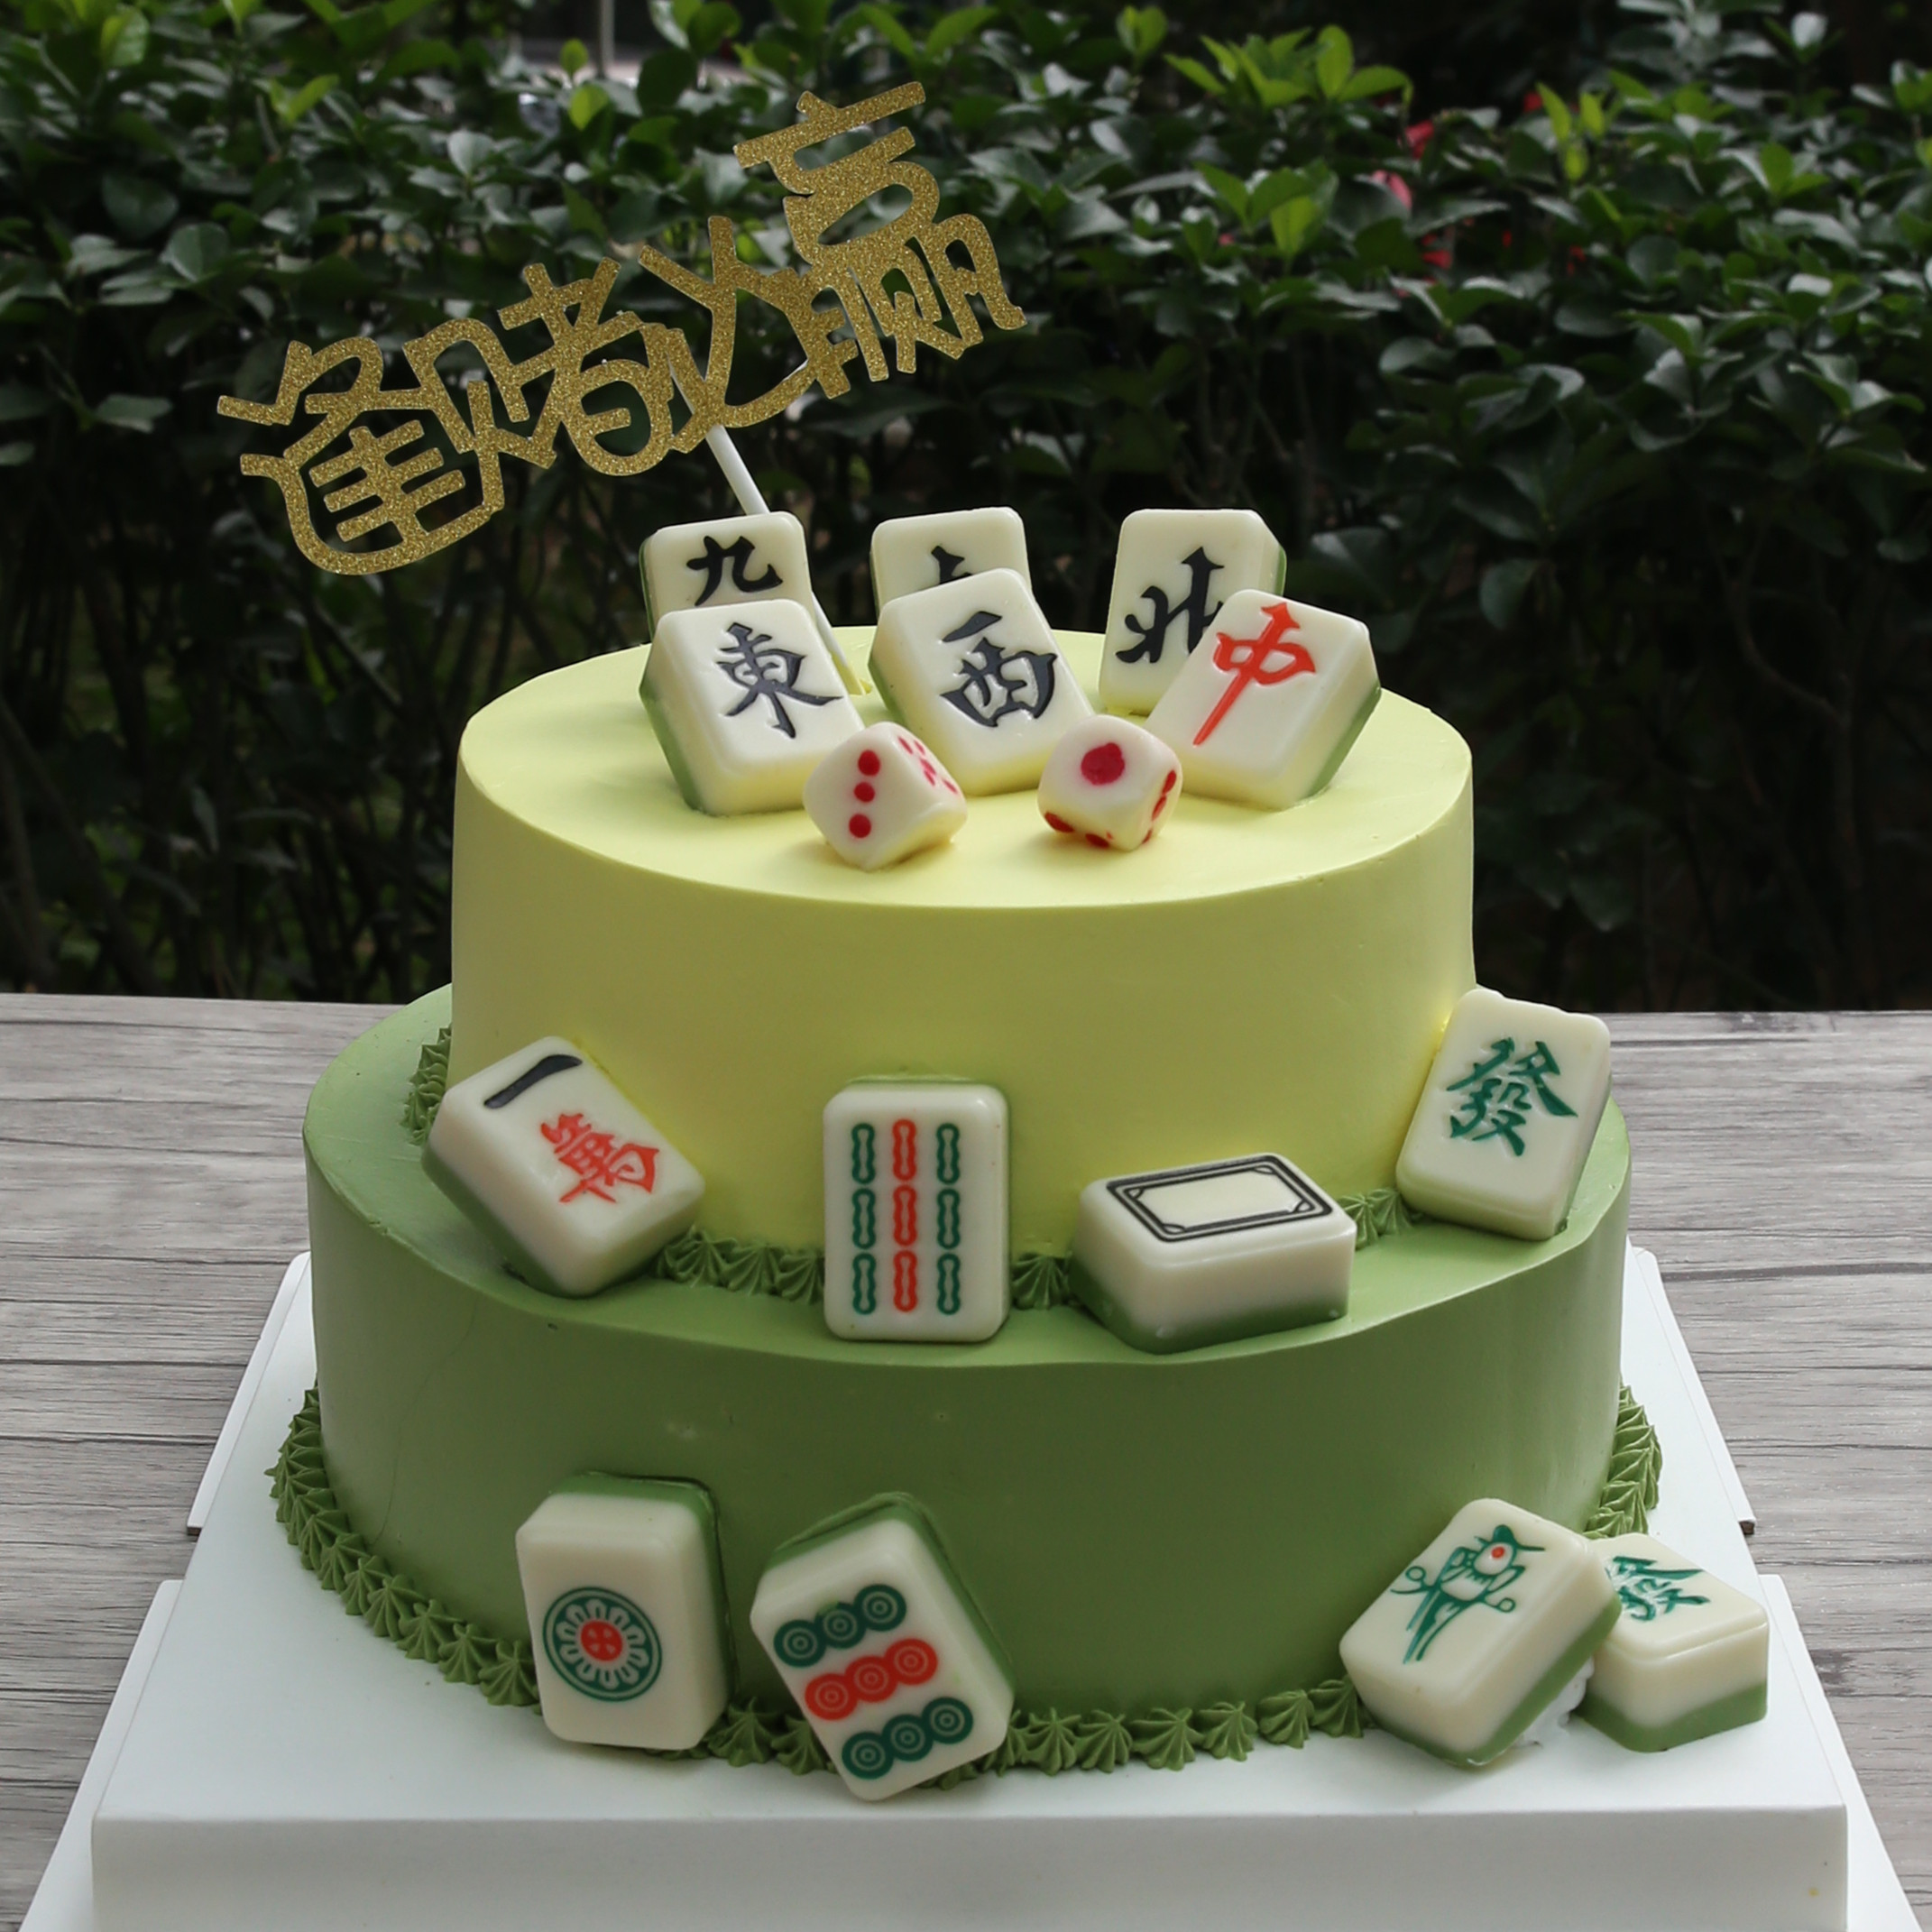 日本职业雀士 小車祥 分享了麻将桌主题的婚礼蛋糕